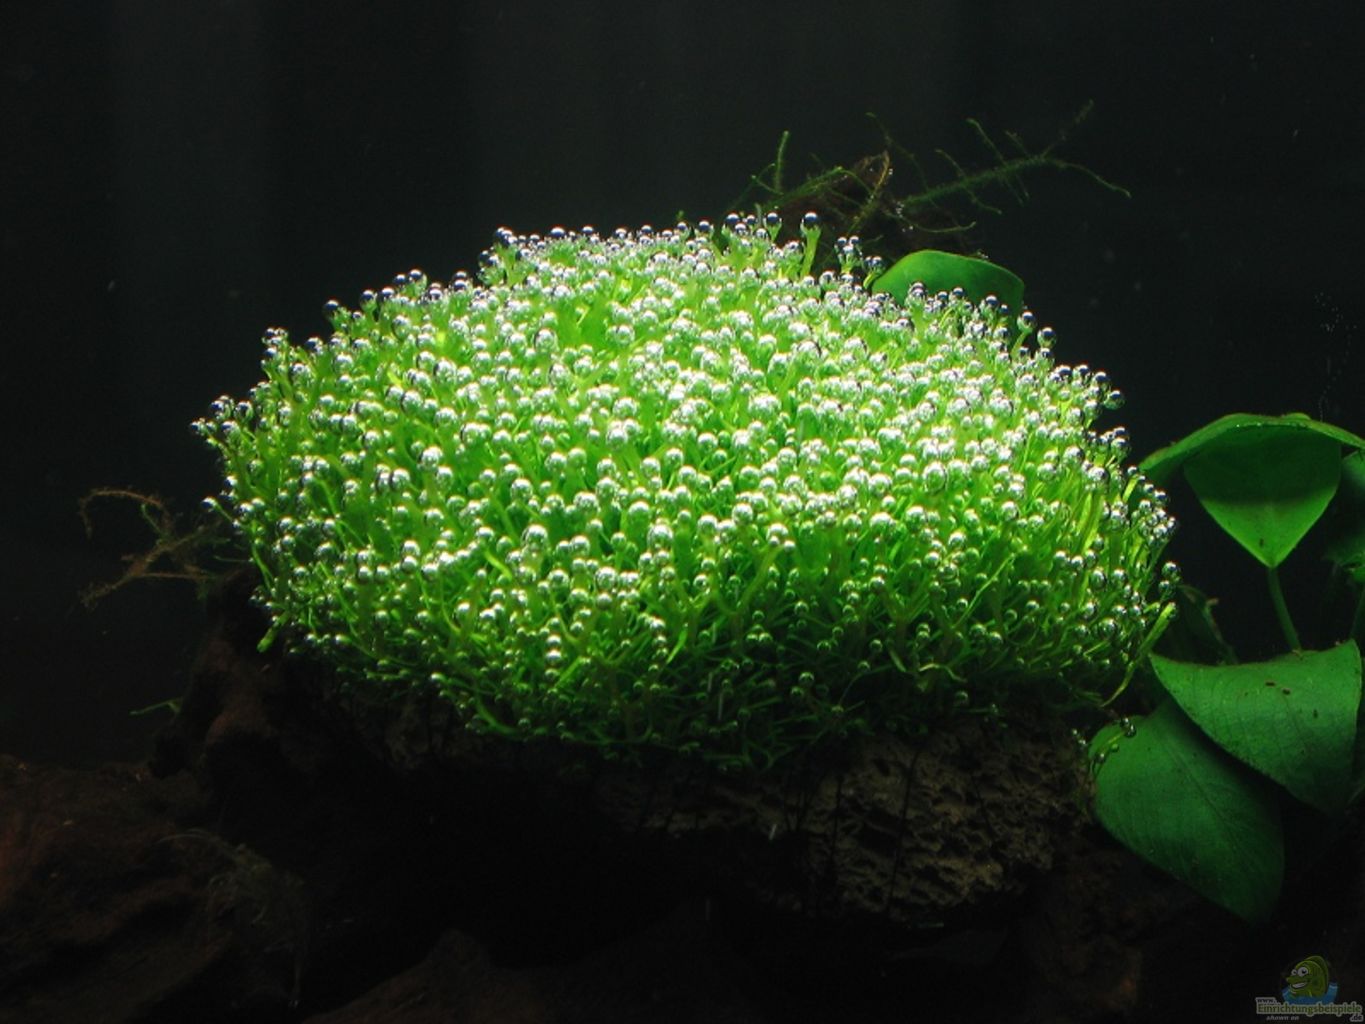 Аквариумное растение риччия, как выглядит, виды и условия содержания, использование для украшения аквариума